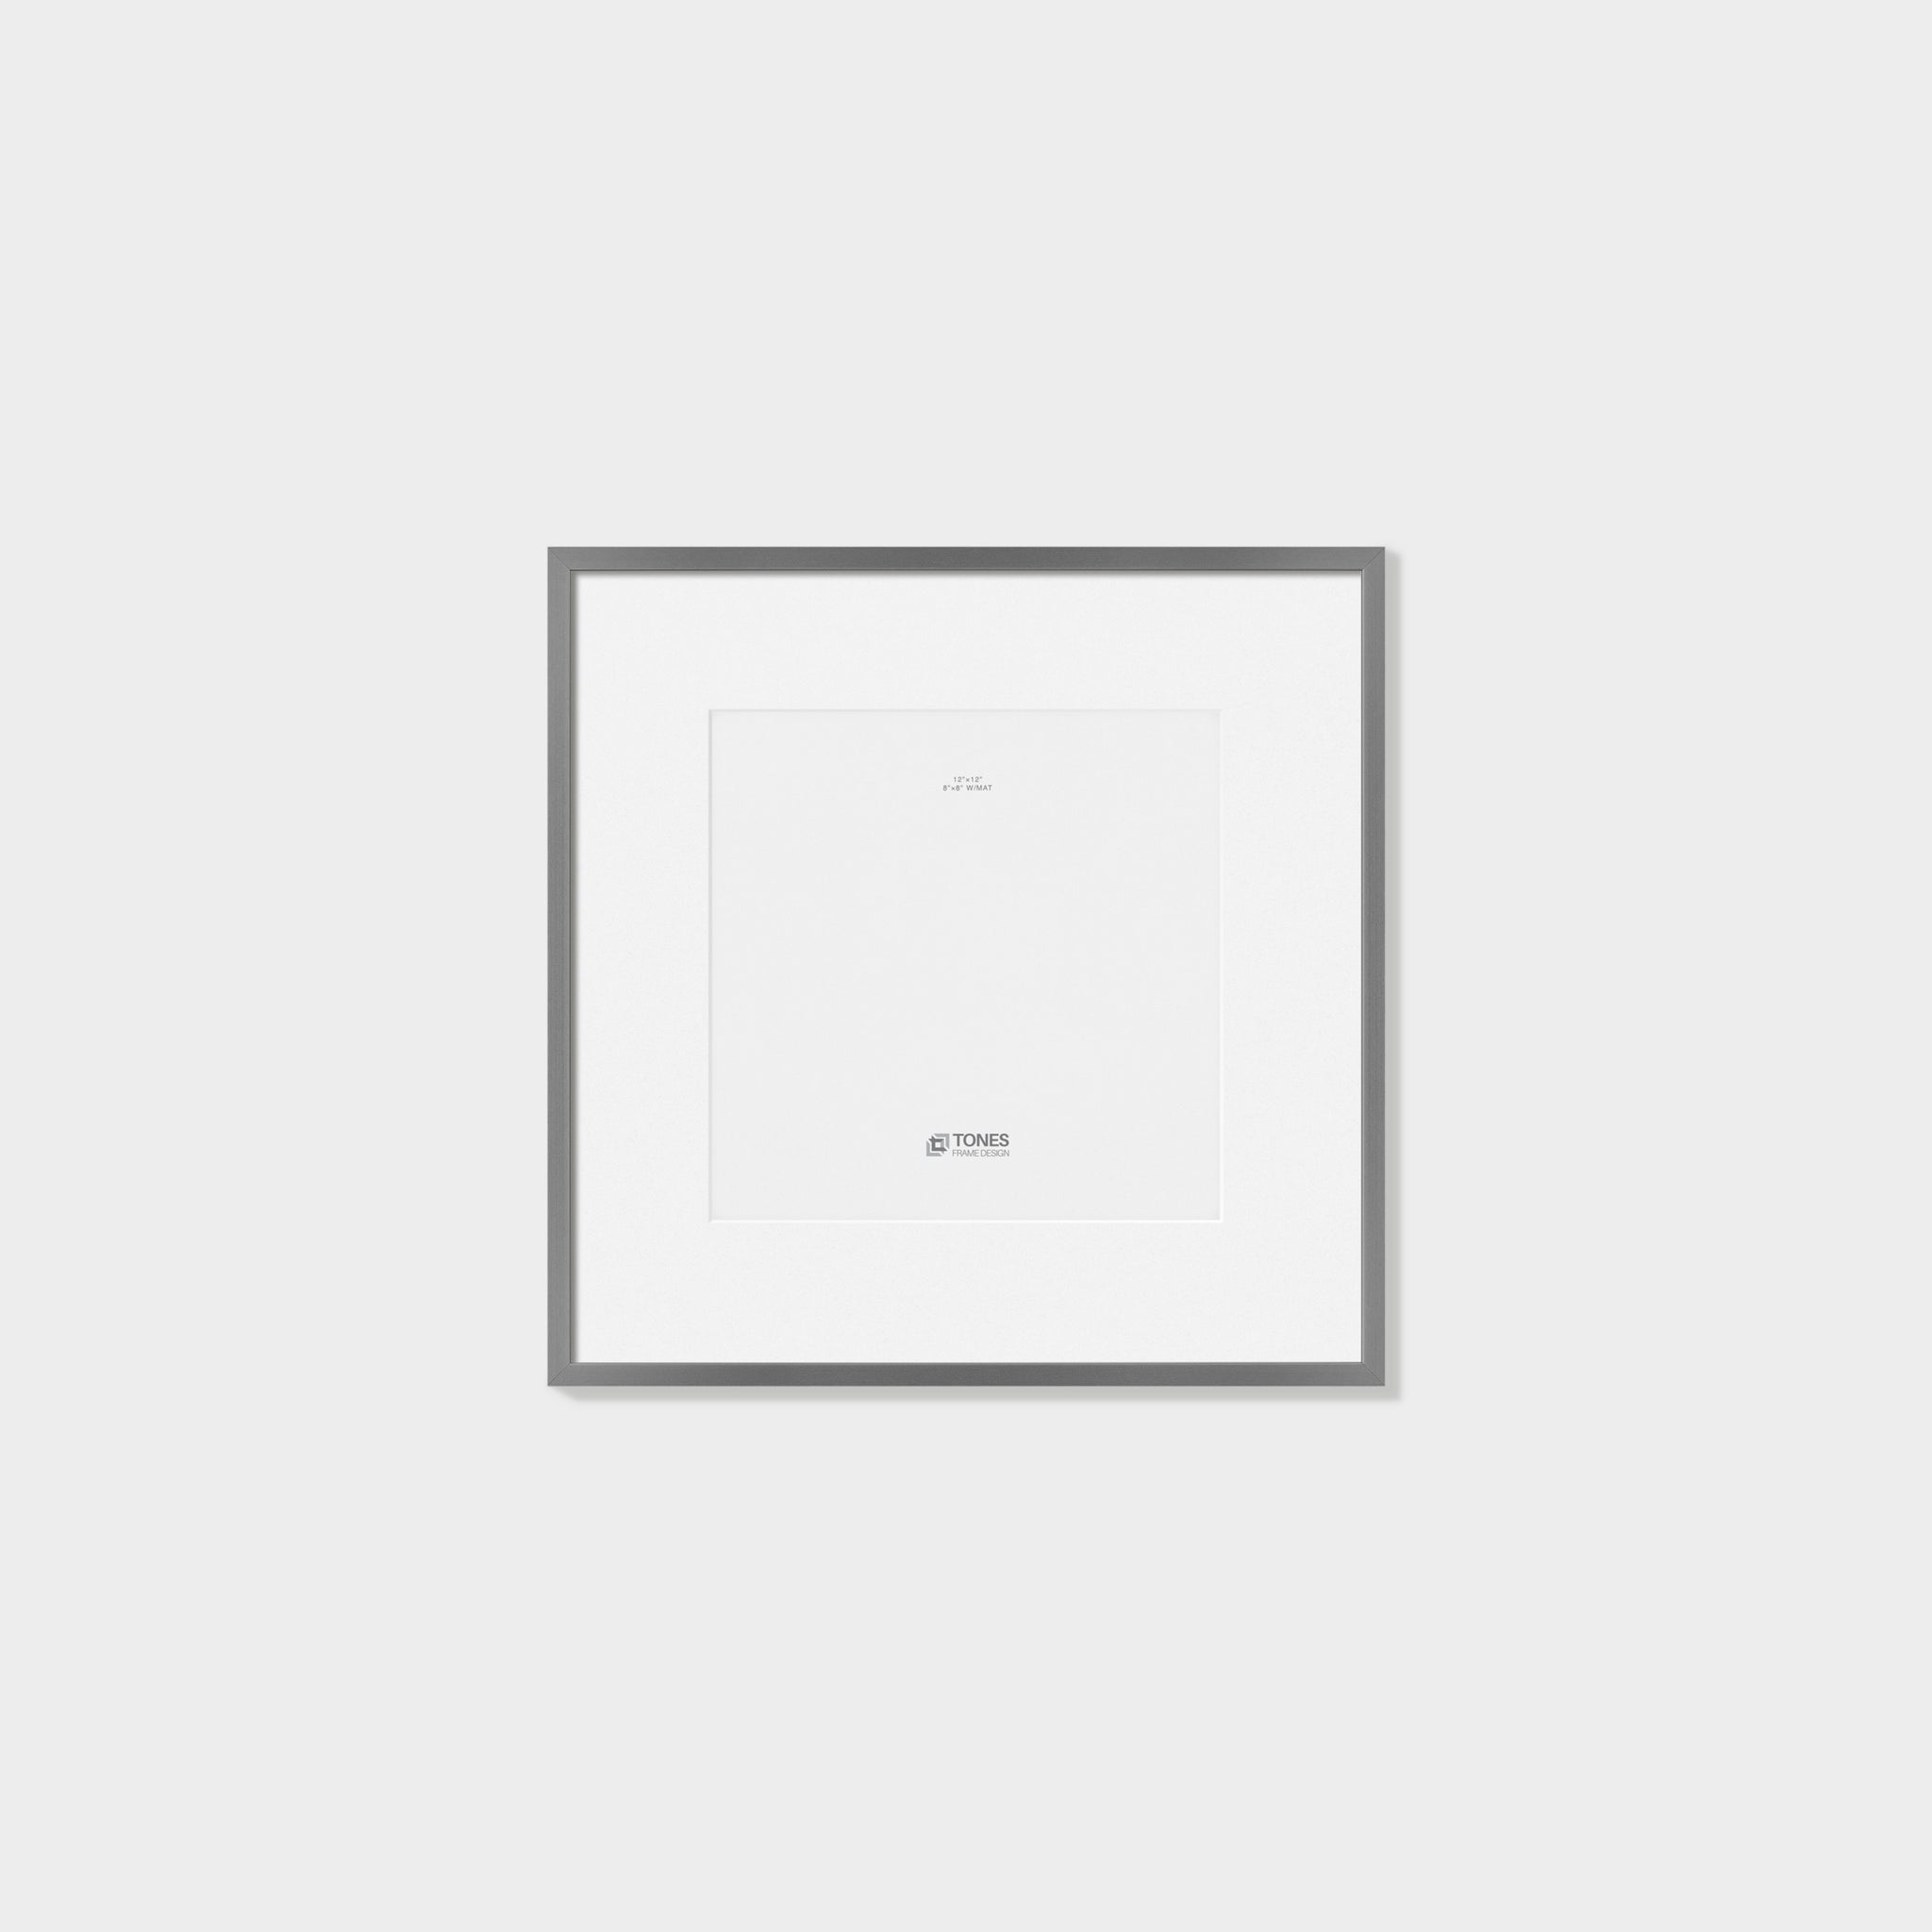 Square Metal Picture Frame 12''x12'' _ black frame | Tones frame Design